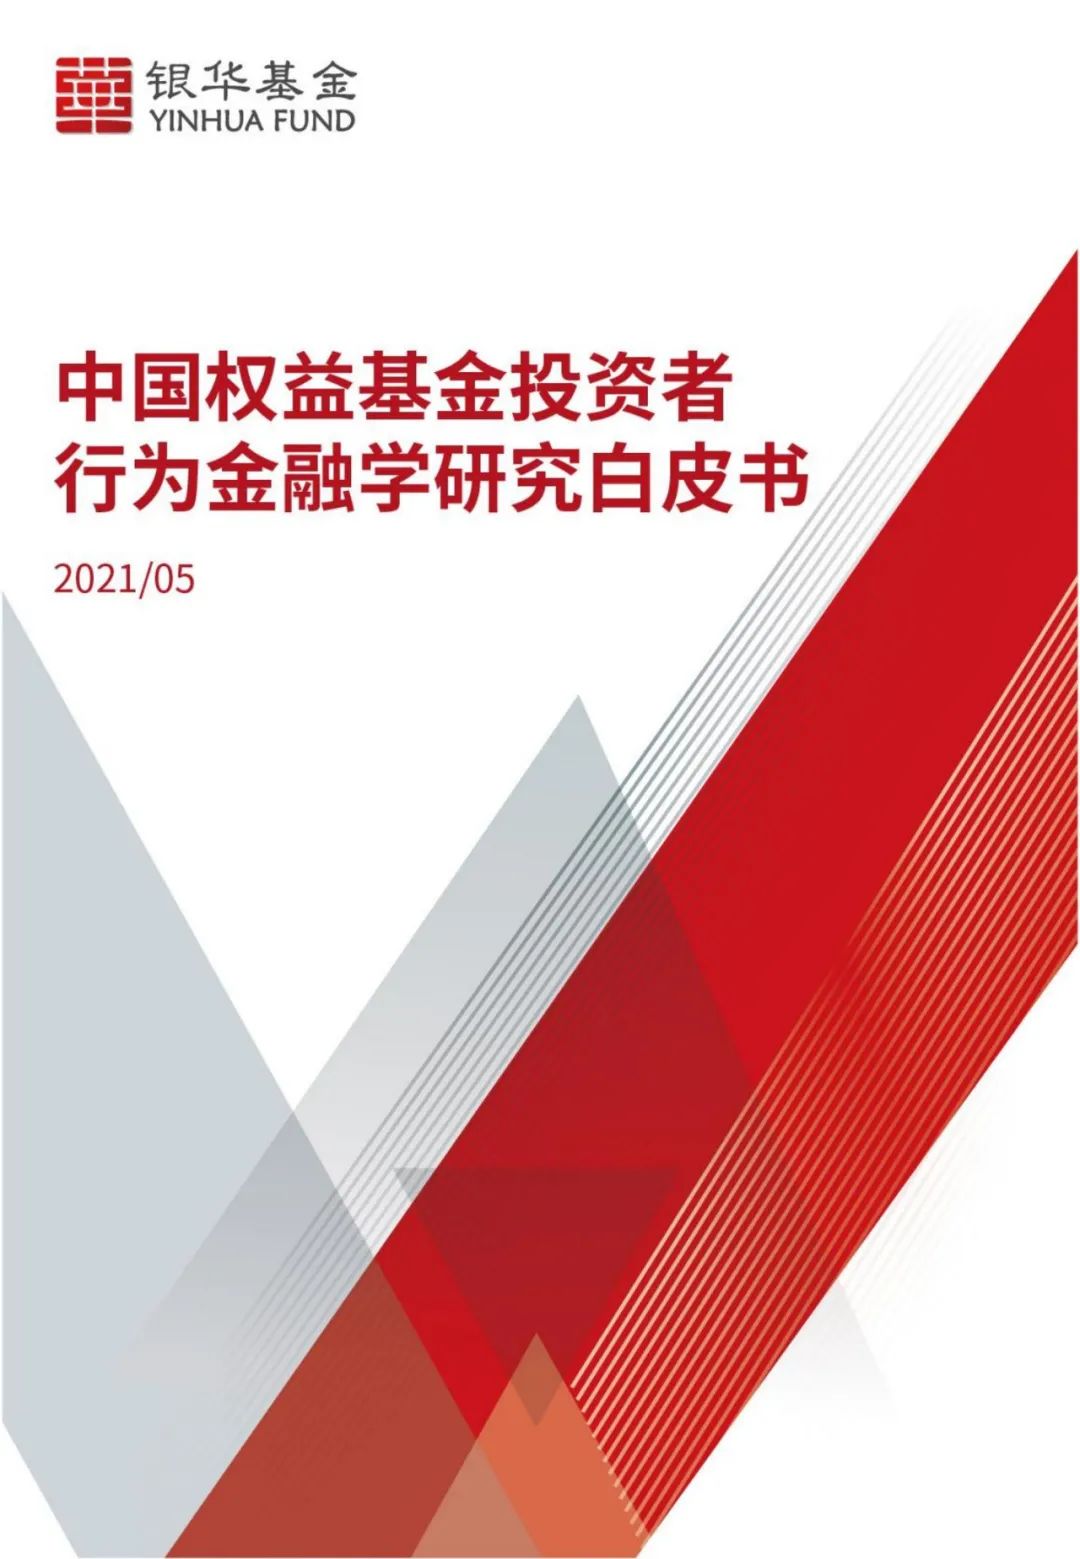 【白皮书全文】《中国权益基金投资者行为金融学研究白皮书》发布